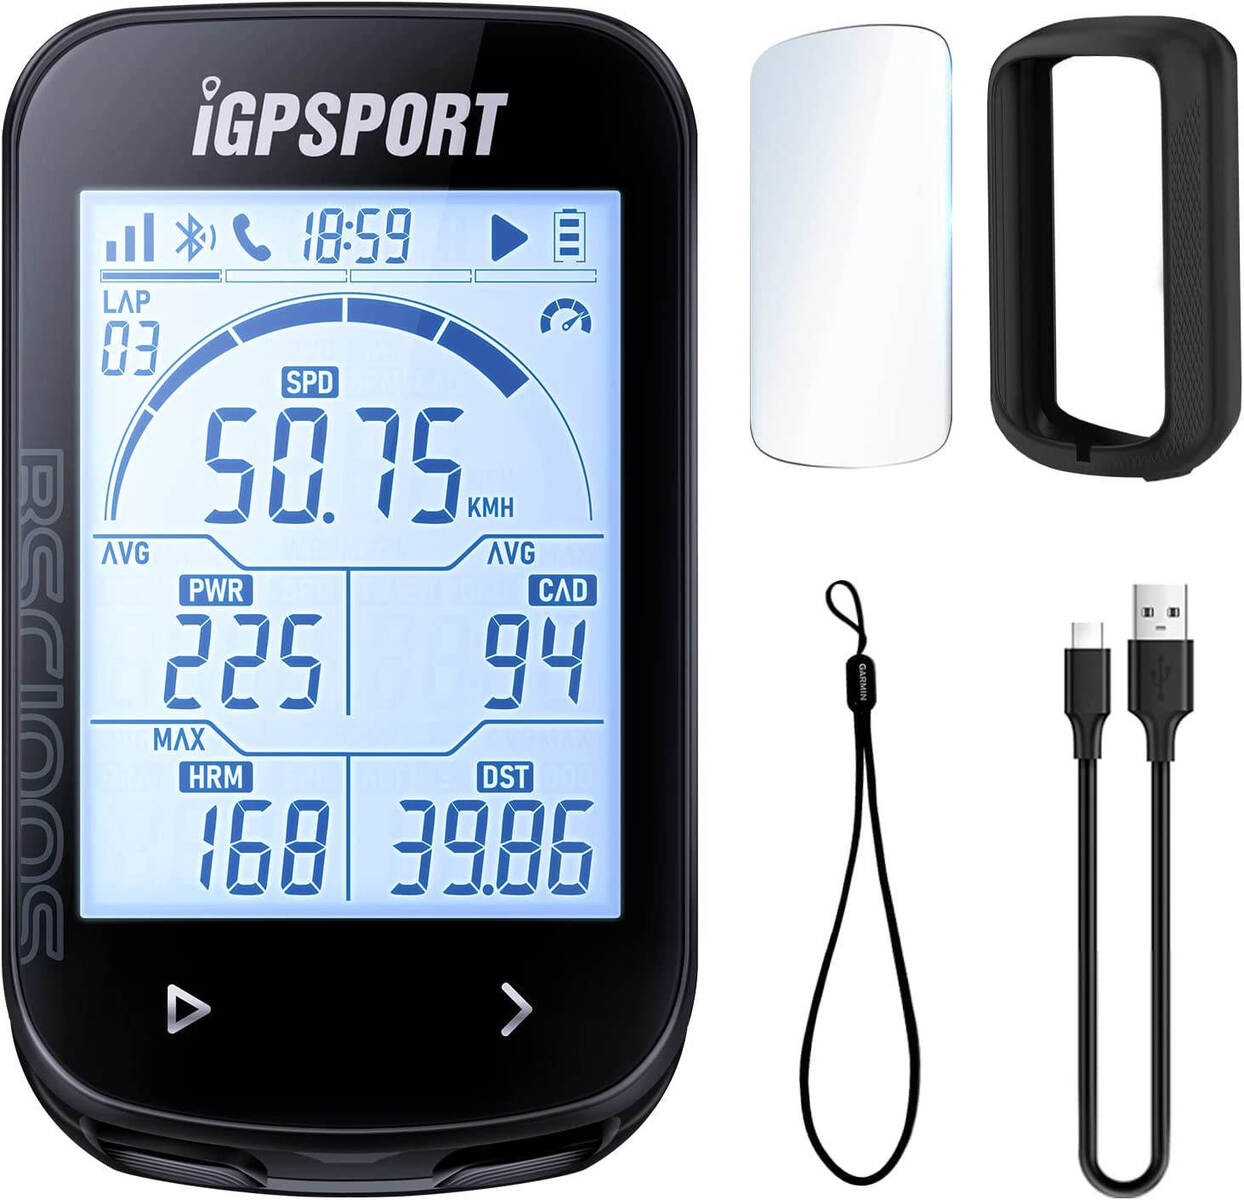 iGPSPORT BSC100S サイクルコンピュータ GPS 自転車 サイコン ワイヤレス、2.6 インチ ANT+ サイクリング スピードメーターとオドメーター GPS Bluetooth、タイプ C 高速充電と大型 LCD 自動バックライト、IPX7 防水すべての電動自転車に合わせてください (Type-c 付き) 自動接続をサポート 40種類以上のカスタムサイクリングデータ この商品についてANT+/BLE5.0センサー接続：当社の自転車スピードメーターBSC100Sは速度/ケイデンス/心拍センサーとパワーメーターと接続することができ、走行ごとに自動接続をサポートします。そして、強力なチップで、GPS+BeiDou+QZSS+Galileo+Glonassをサポートし、より良い検索速度と高い精度を提供します40種類以上のカスタムサイクリングデータ：当社のサイクルコンピュータBSC100Sは40以上のサイクリングデータを選択することができます。APPと一緒に使用する場合、一緒に使用するセンサーに応じてAPPにプリセットされている推奨ソリューションを選択することができ、また、カスタムモジュールで表示したいデータをカスタマイズすることができます。また、インターバルデータを表示するためにダイナミックバーで創造的に設計されており、あなたは自分でインターバルの値を定義することができます2.6インチオートバックライトスクリーン：当社のサイクルコンピュータBSC100Sは、2.6インチの大型アンチグレアスクリーンを採用し、より鮮明で透明感のある視覚体験をもたらします。そして、自動バックライト機能により、太陽光の下でもデータをはっきりと見ることができます。また、超薄型のデザインにより、軽量で持ち運びが容易ですシンクデータ＆データ共有：サイクリングGPSユニットBSC100Sは、個々のニーズを満たすために、サードパーティのアプリケーションプラットフォームと互換性があり、柔軟なデータサービスソリューションを提供することができますので、あなたはStravaやTrainingPeaksにサイクリングデータを同期させることができます。また、iGPSPORT APPを使用すると、ソーシャルメディアにデータを共有することができます。また、スマート通知機能を使えば、電話がかかってきたときに、すぐにあなたに知らせることができます40時間のバッテリー寿命：サイクリングコンピューターBSC100Sは40時間のバッテリー寿命をサポートし、特に長距離のライディングを可能にします。また、IPX7防水性能で、大雨や悪天候を心配する必要がありません。また、Type-Cインターフェースを採用し、より利便性の高い設計となっています。さらに、自動ラップ、自動データアップロード、自動ホーム画面に戻るなど、10以上の自動制御機能をサポートしており、ライディングに集中することができます5 in 1：1つ購入すると、サイクルコンピュータBSC100、type-c充電ケーブル、保護強化フィルム、シリコンケース、ストラップが付属し、便利に使えますZXC-03 7